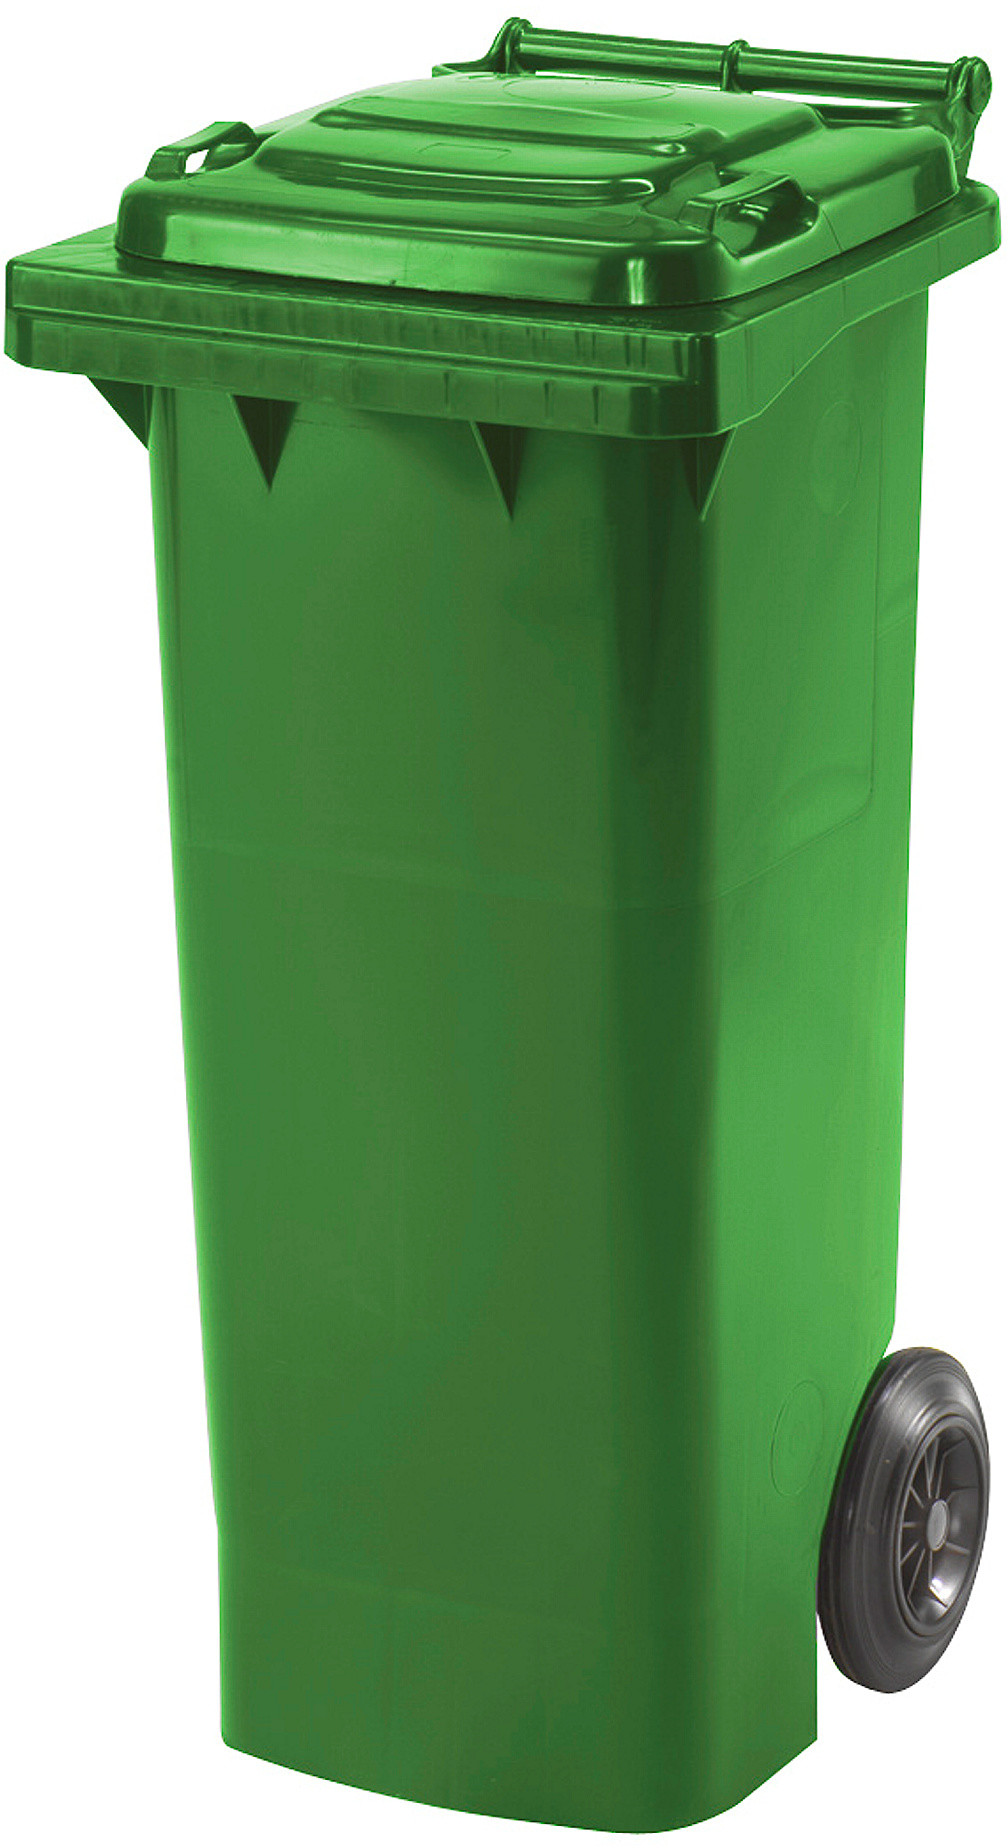 AJ Pojemnik na śmieci 80 l. zielony 229011